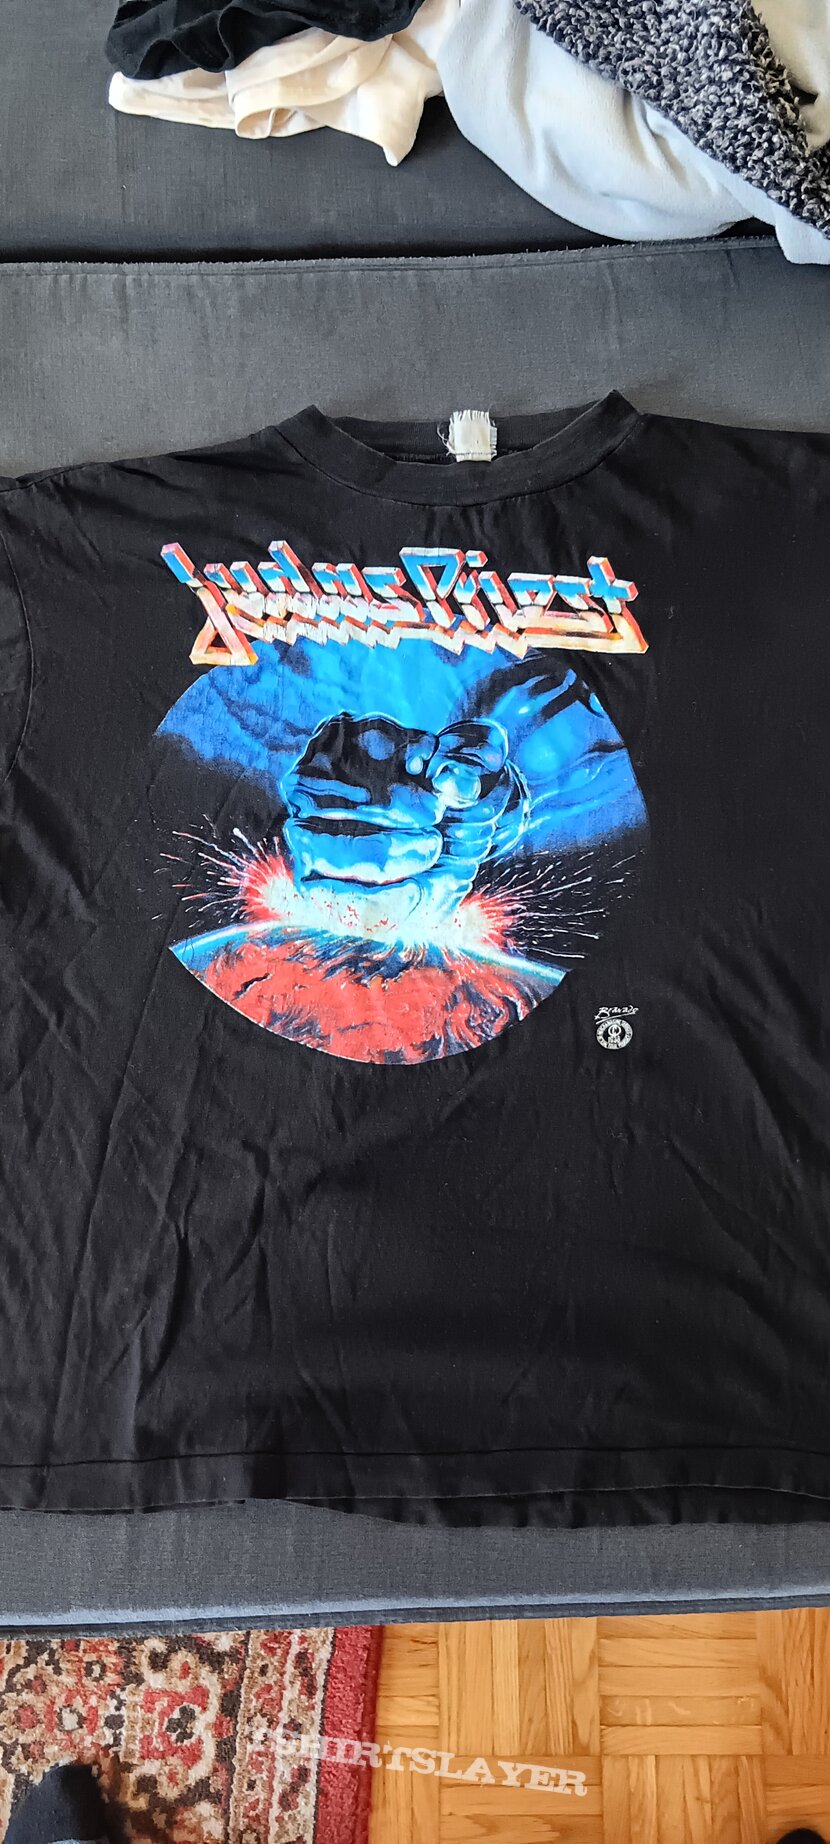 Judas Priest 1988 Tour shirt